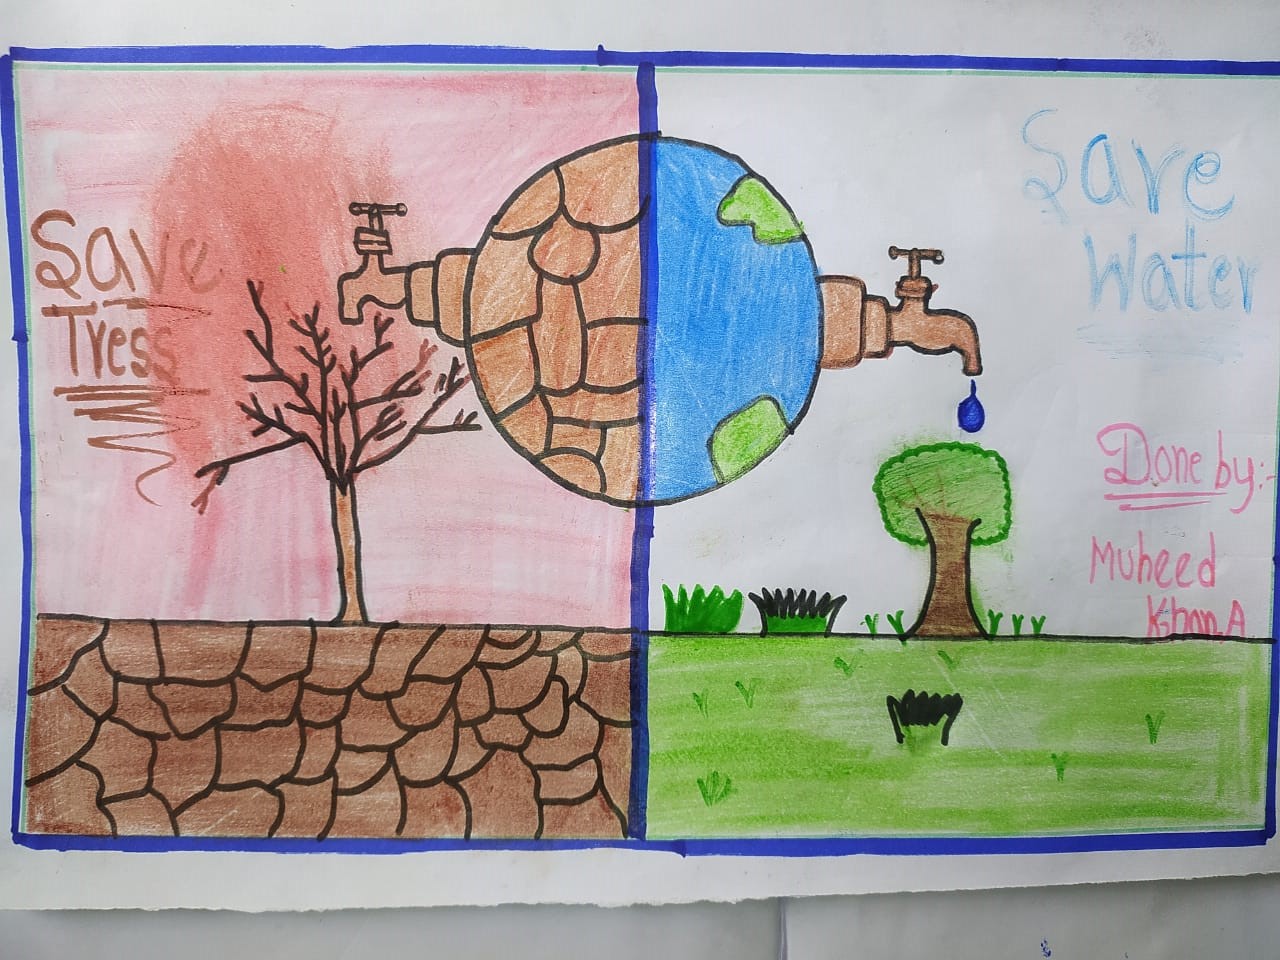 Save water - Nikka school - Drawings & Illustration, Childrens Art, Nursery  Rhymes & Stories - ArtPal